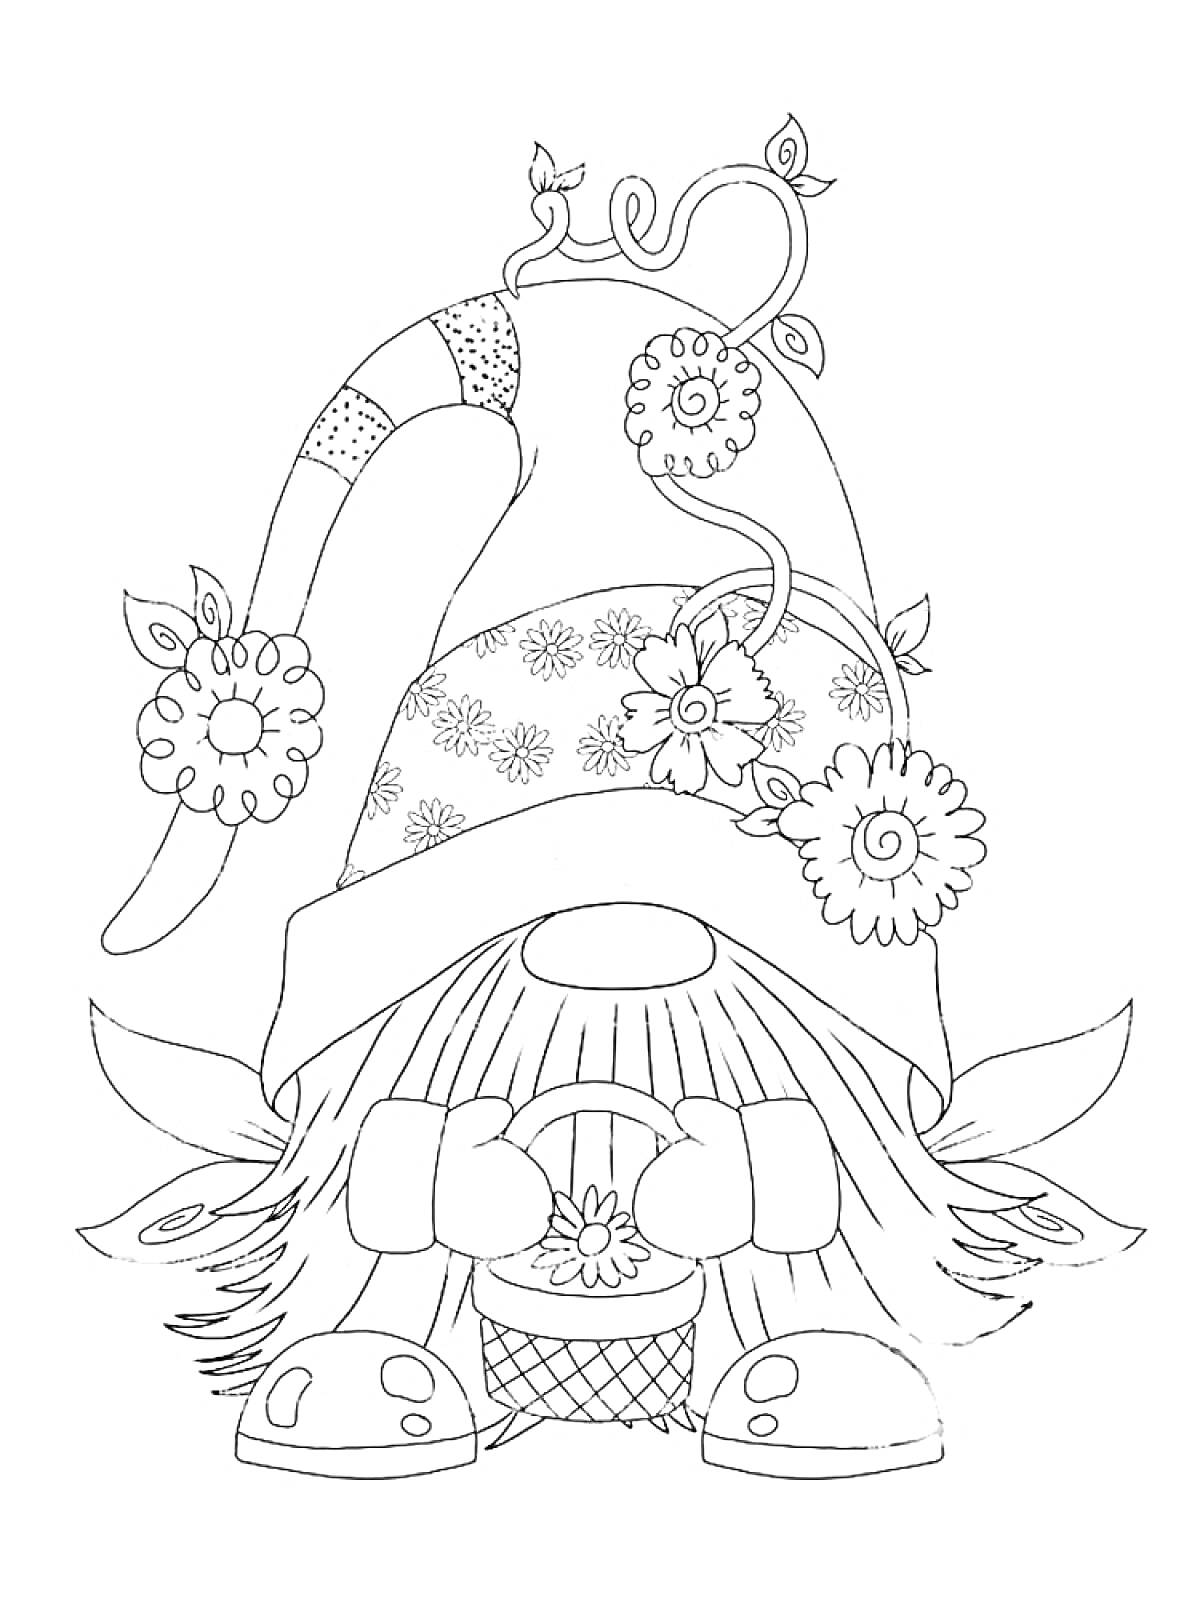 Раскраска Гномик с длинной шапкой, украшенной цветами, который держит корзину